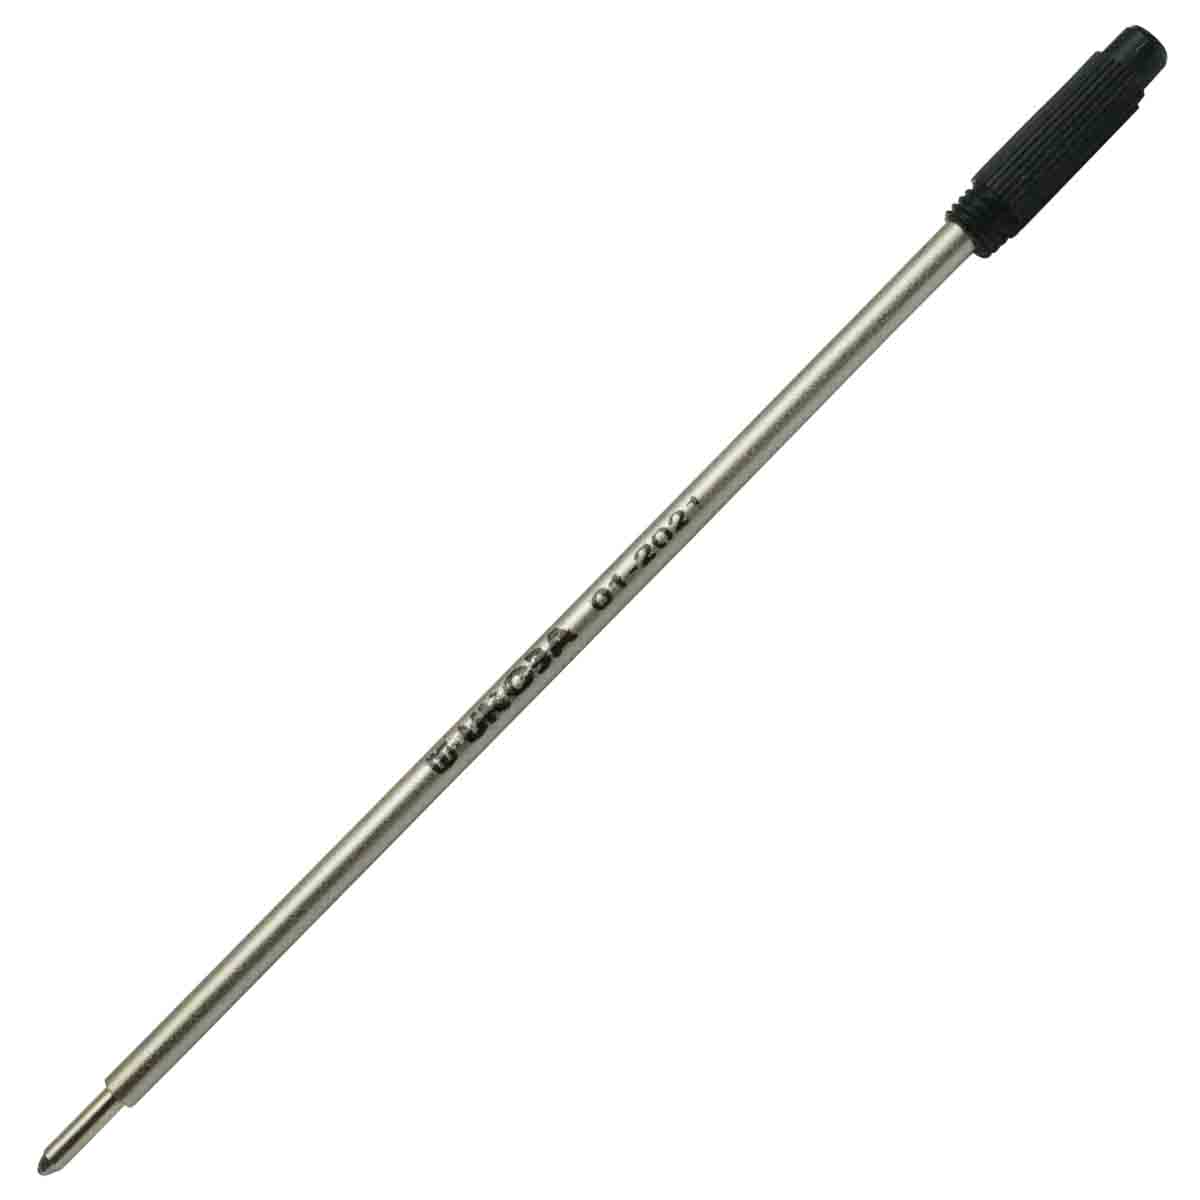 Ukoba 1.0mm Black Twist Ball Pen Refill Model 71054